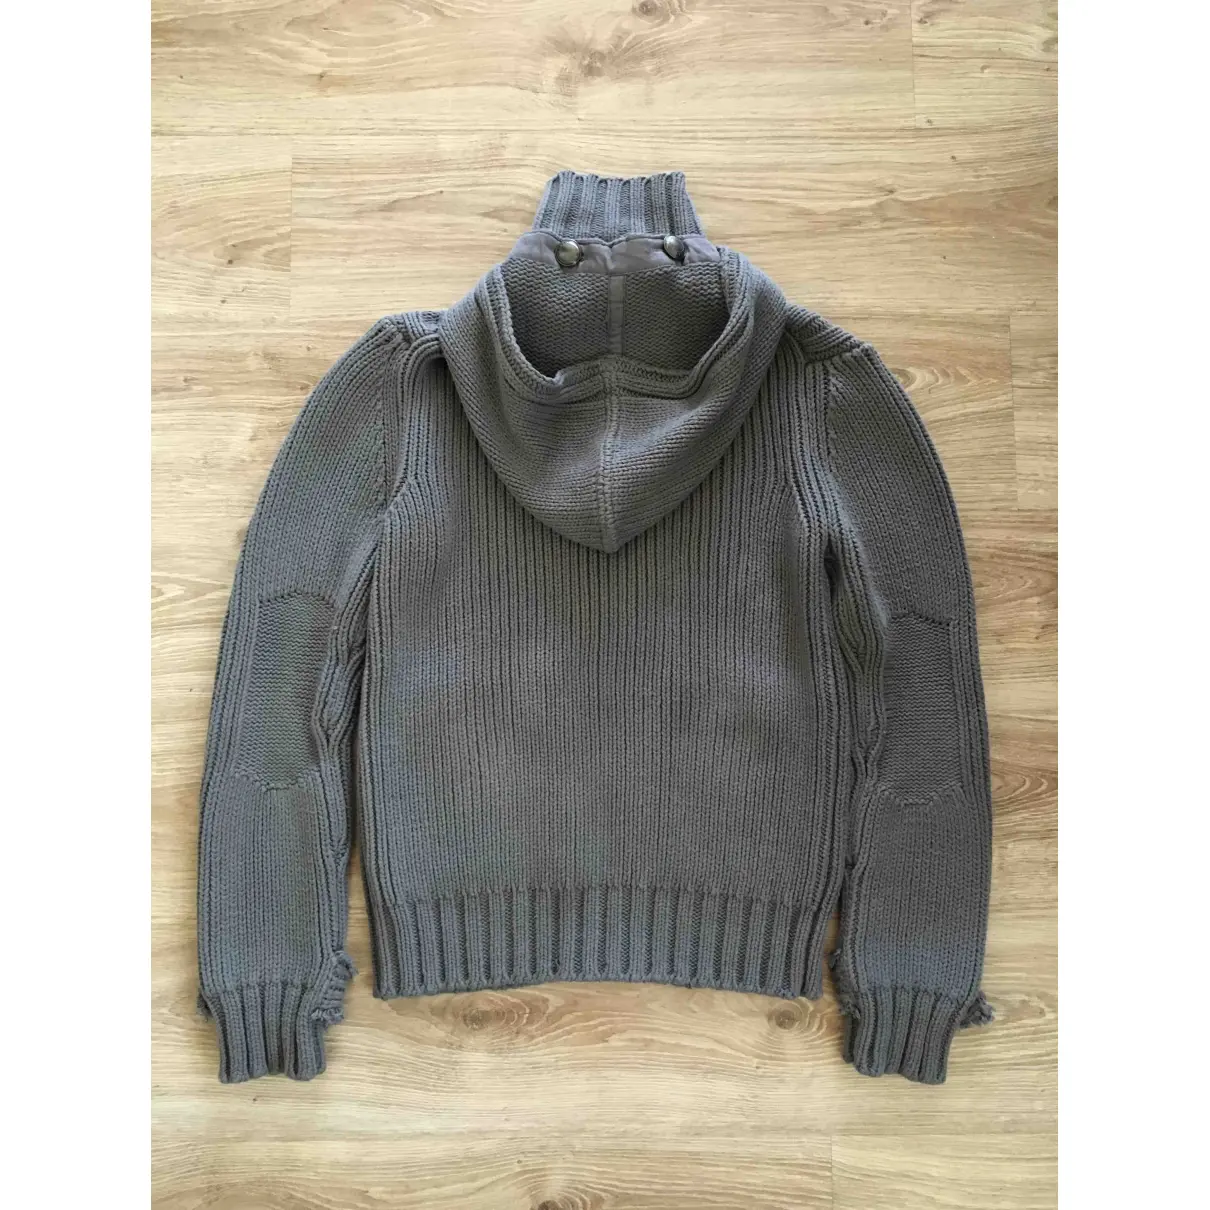 Buy Burberry Sweatshirt online